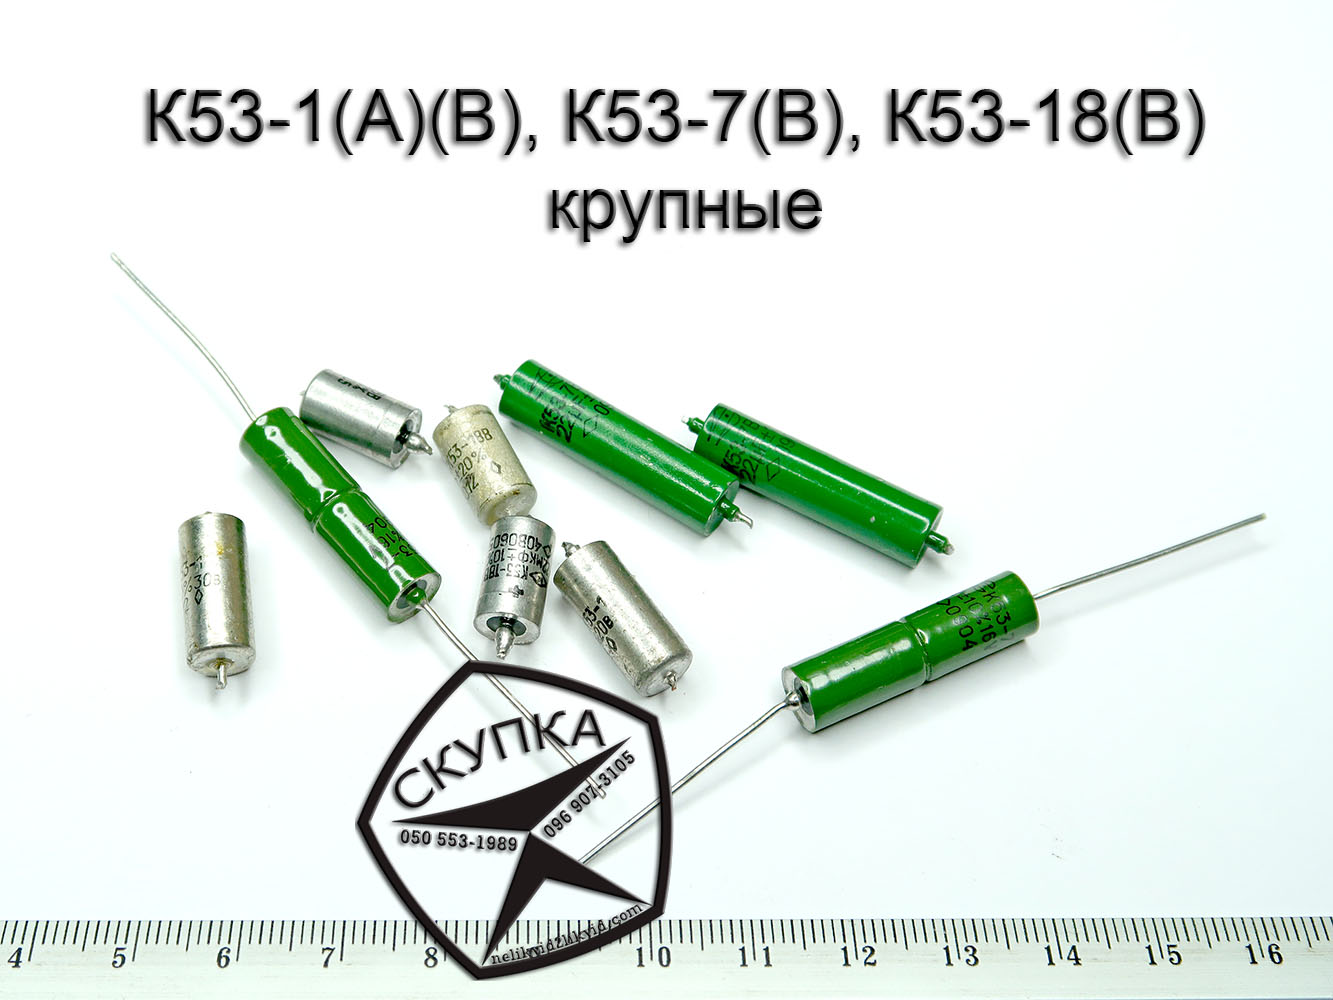 куплю конденсаторы к53-1 к53-7 к53-18 Харьков